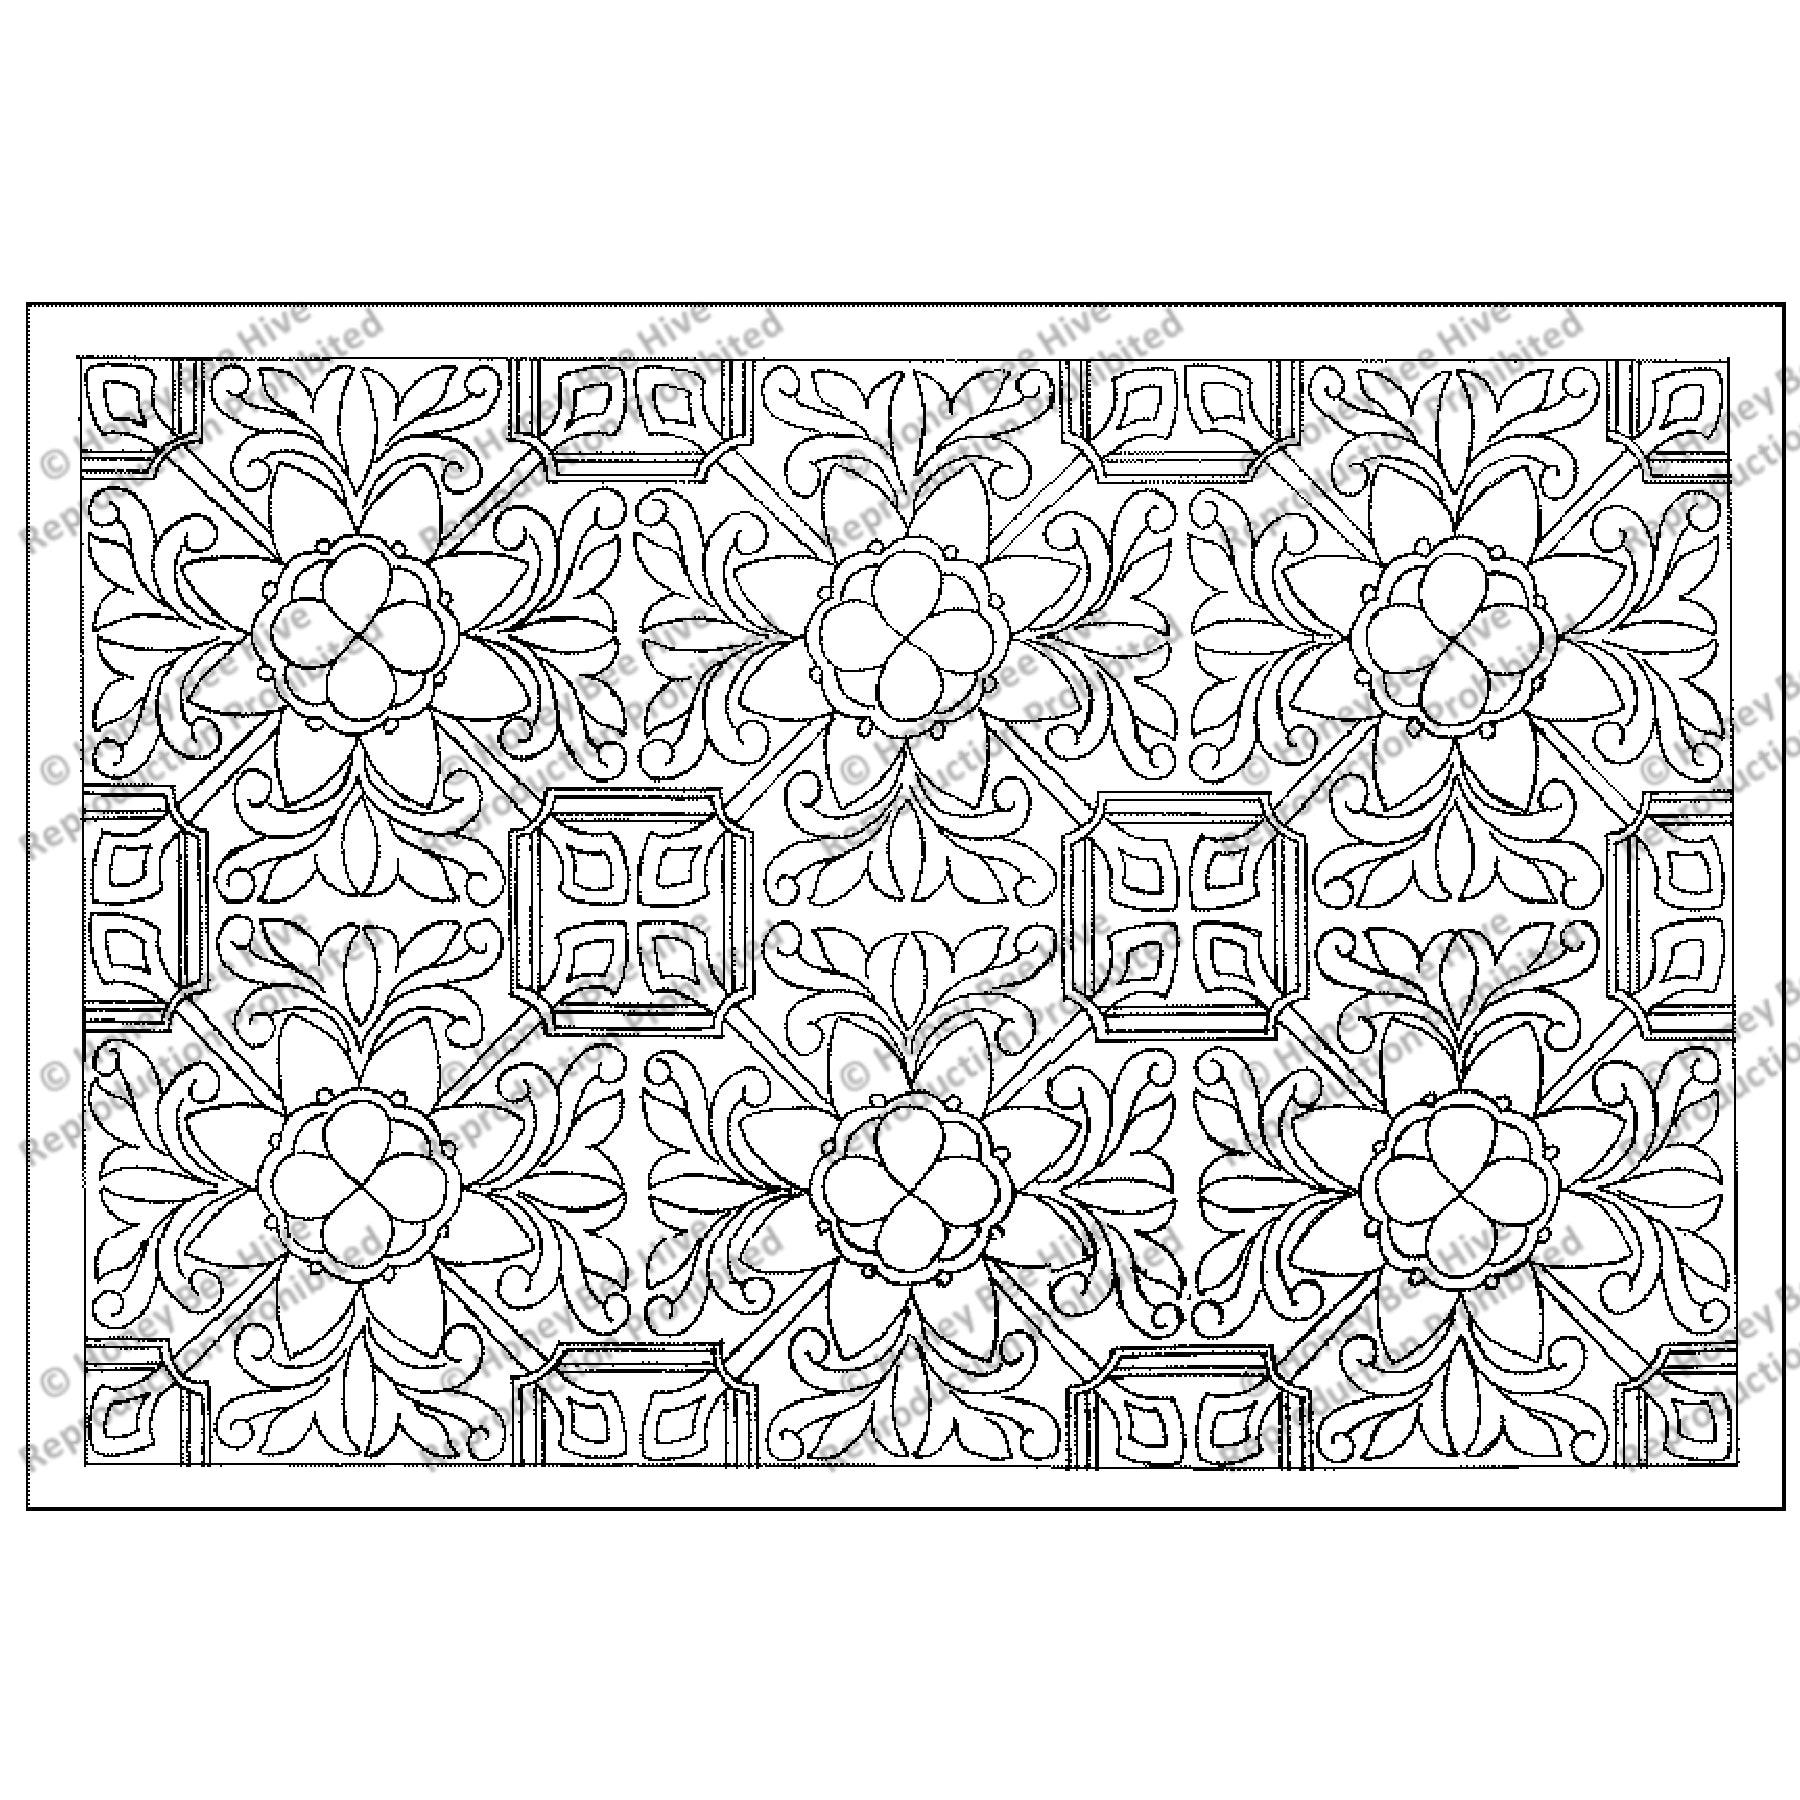 St. Augustine, rug hooking pattern